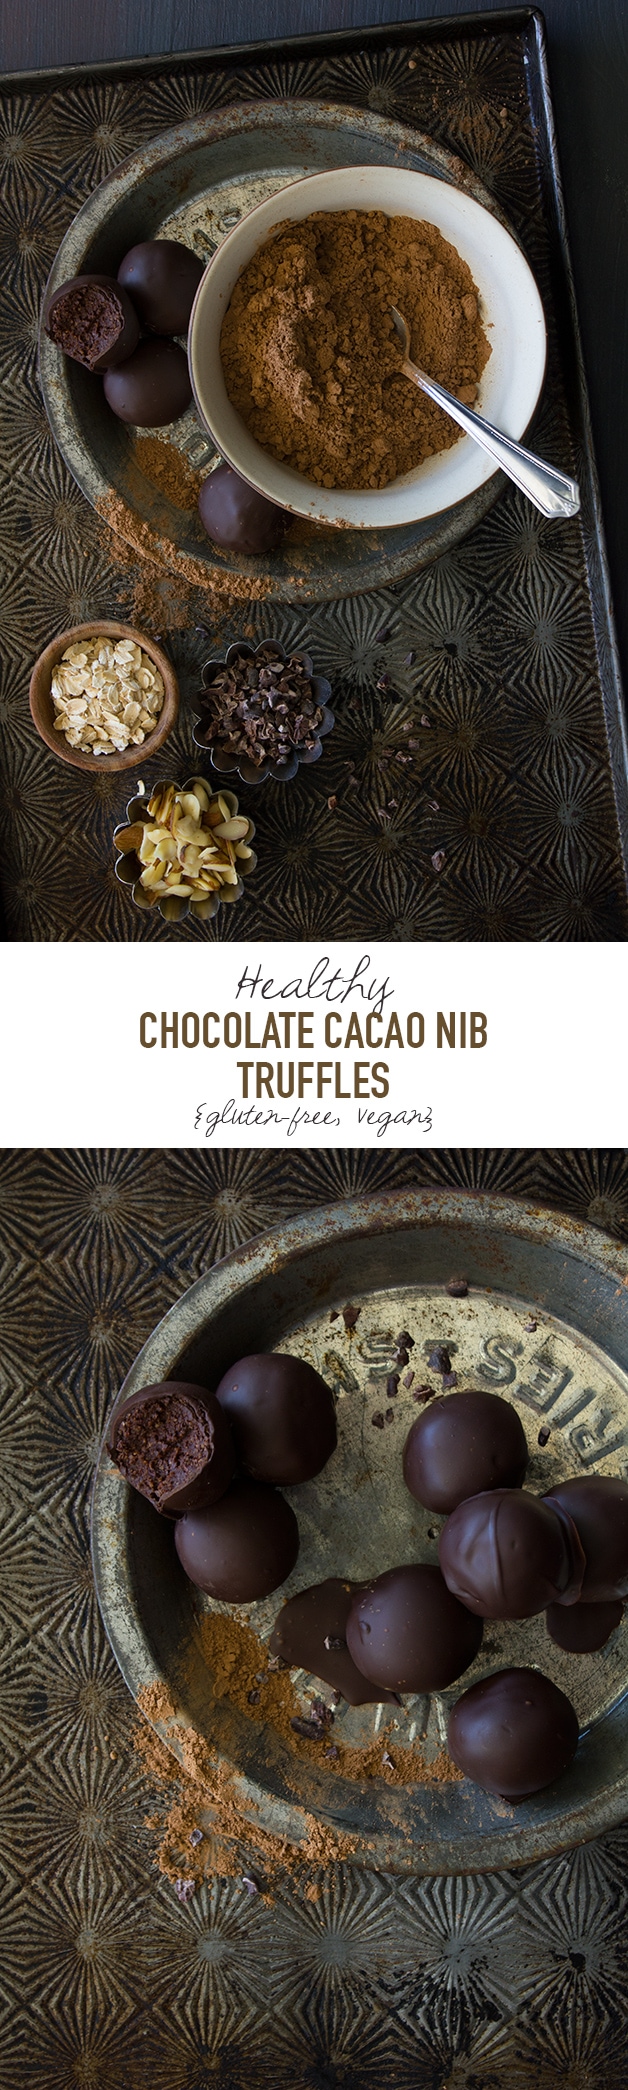 Healthy Chocolate Cacao Nib Truffles {gluten-free, vegan} | www.brighteyedbaker.com